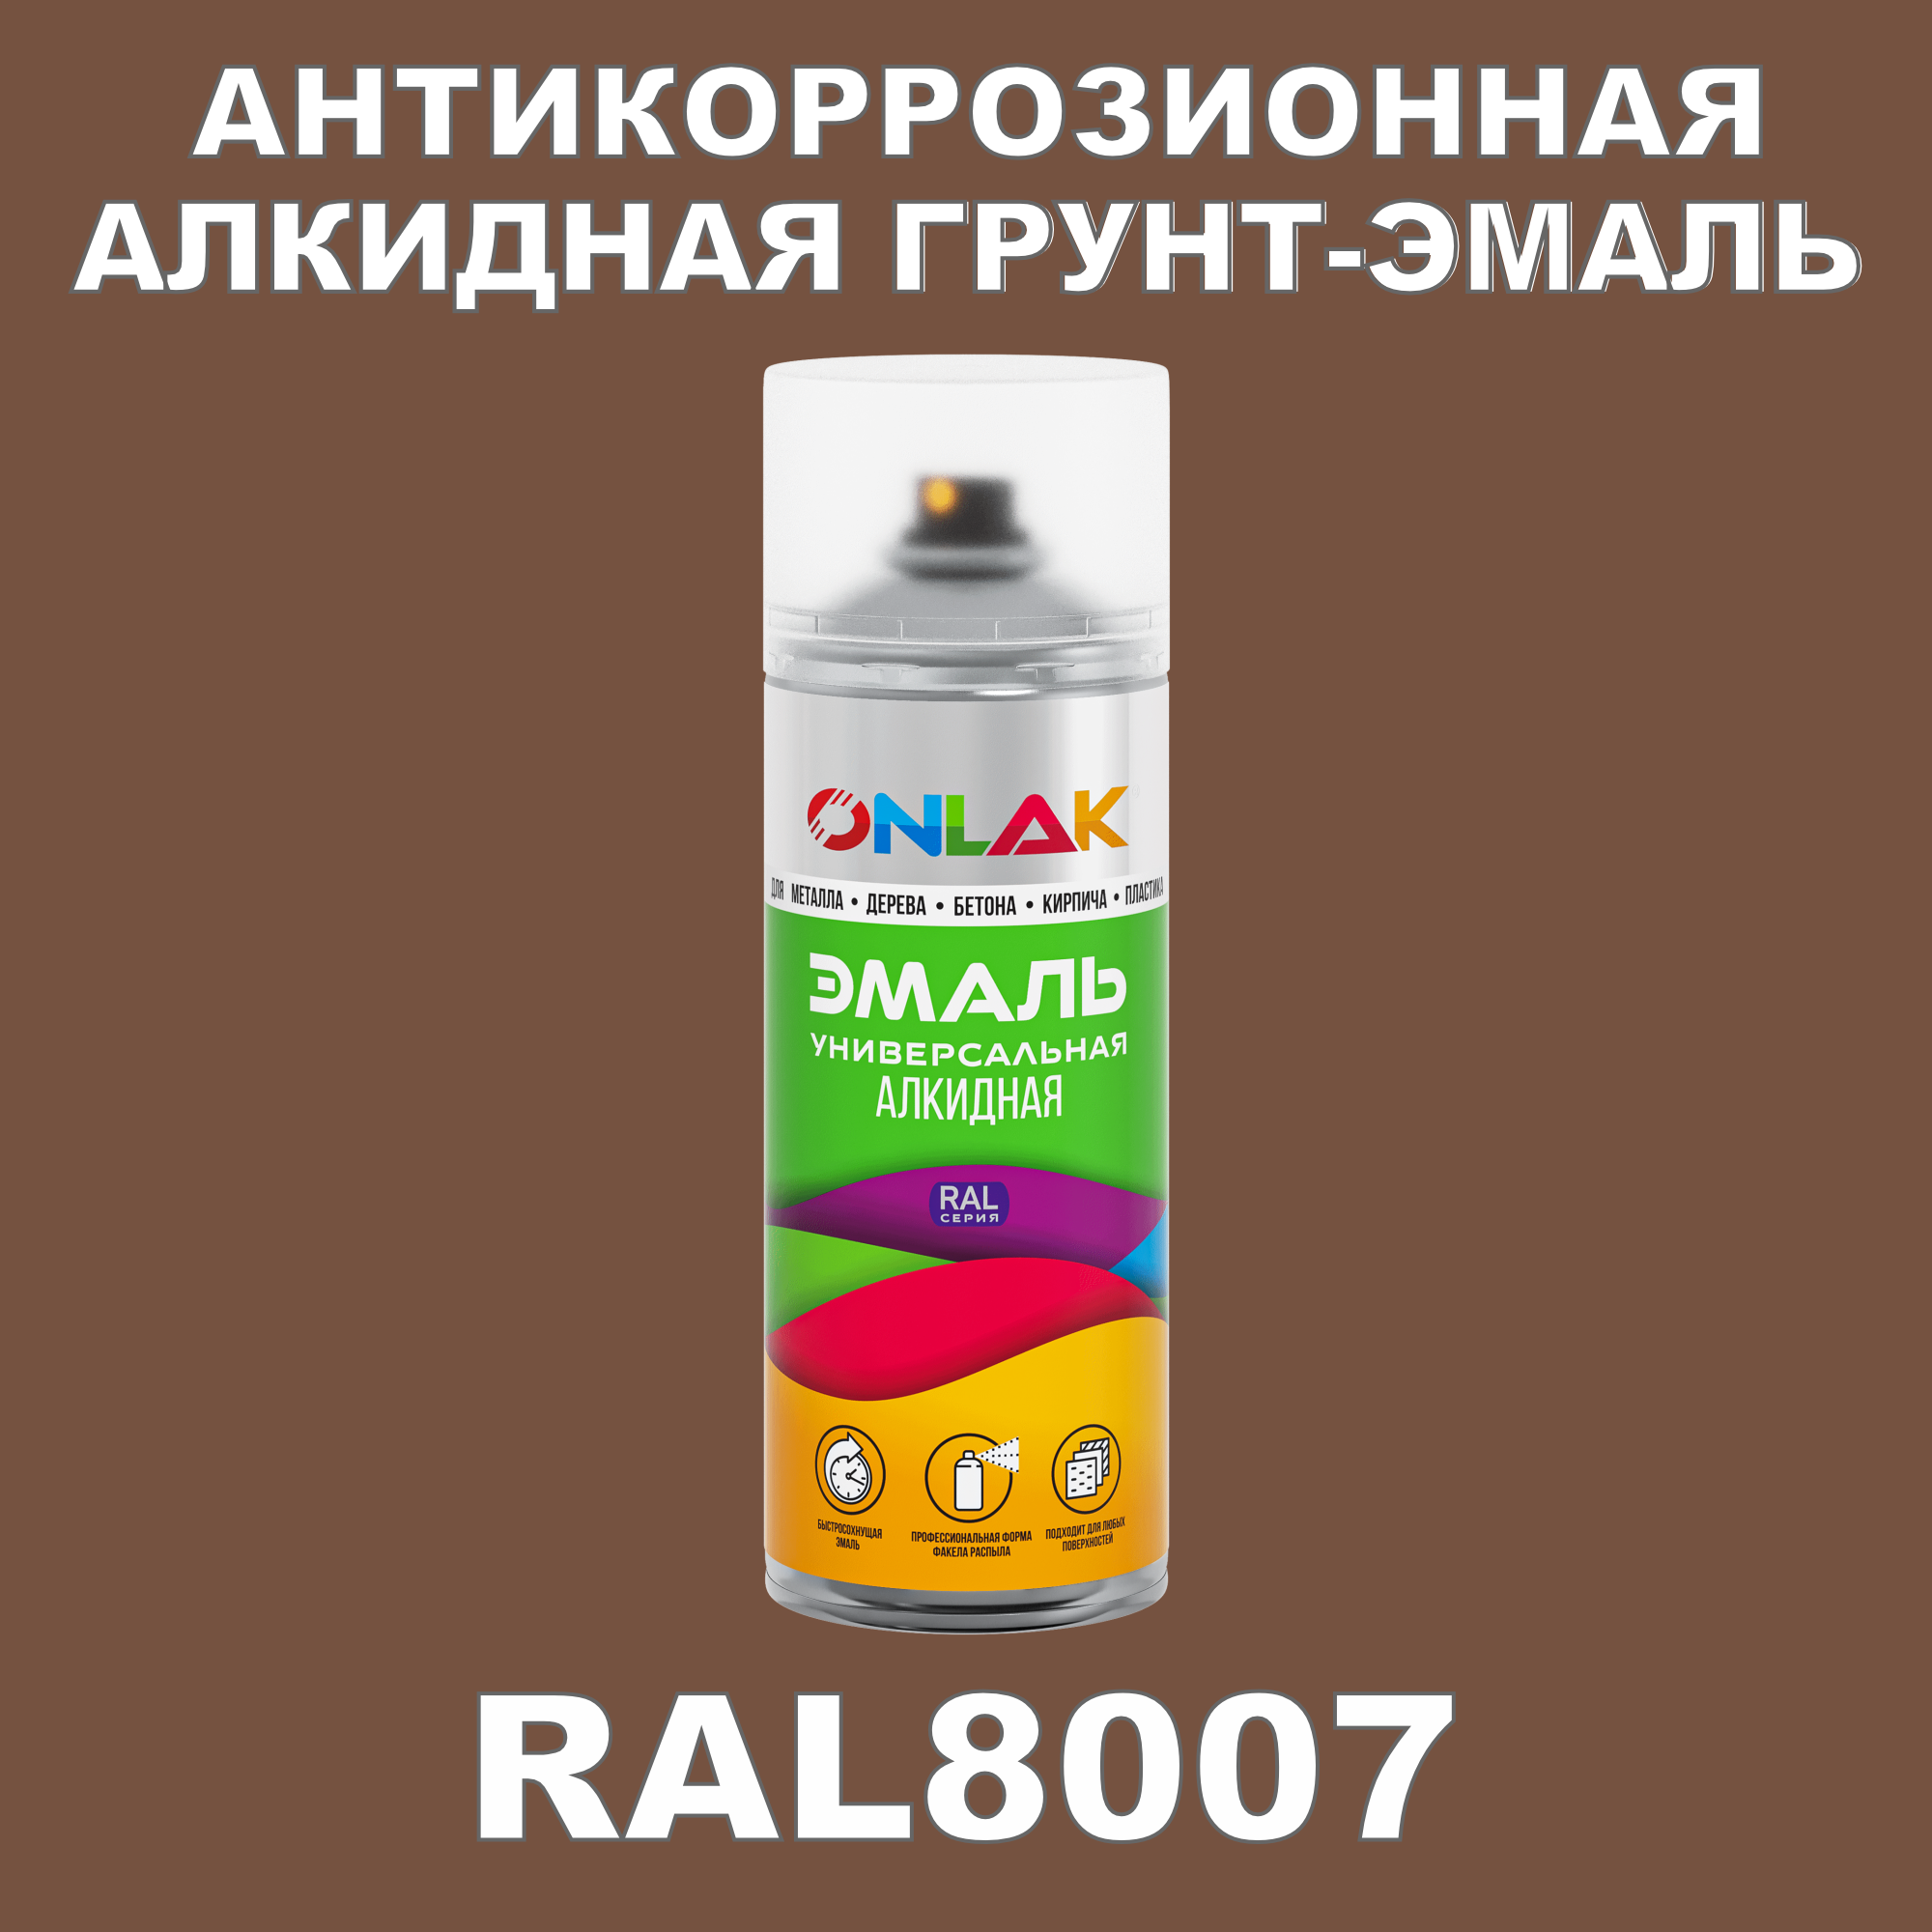 Антикоррозионная грунт-эмаль ONLAK RAL8007 полуматовая для металла и защиты от ржавчины